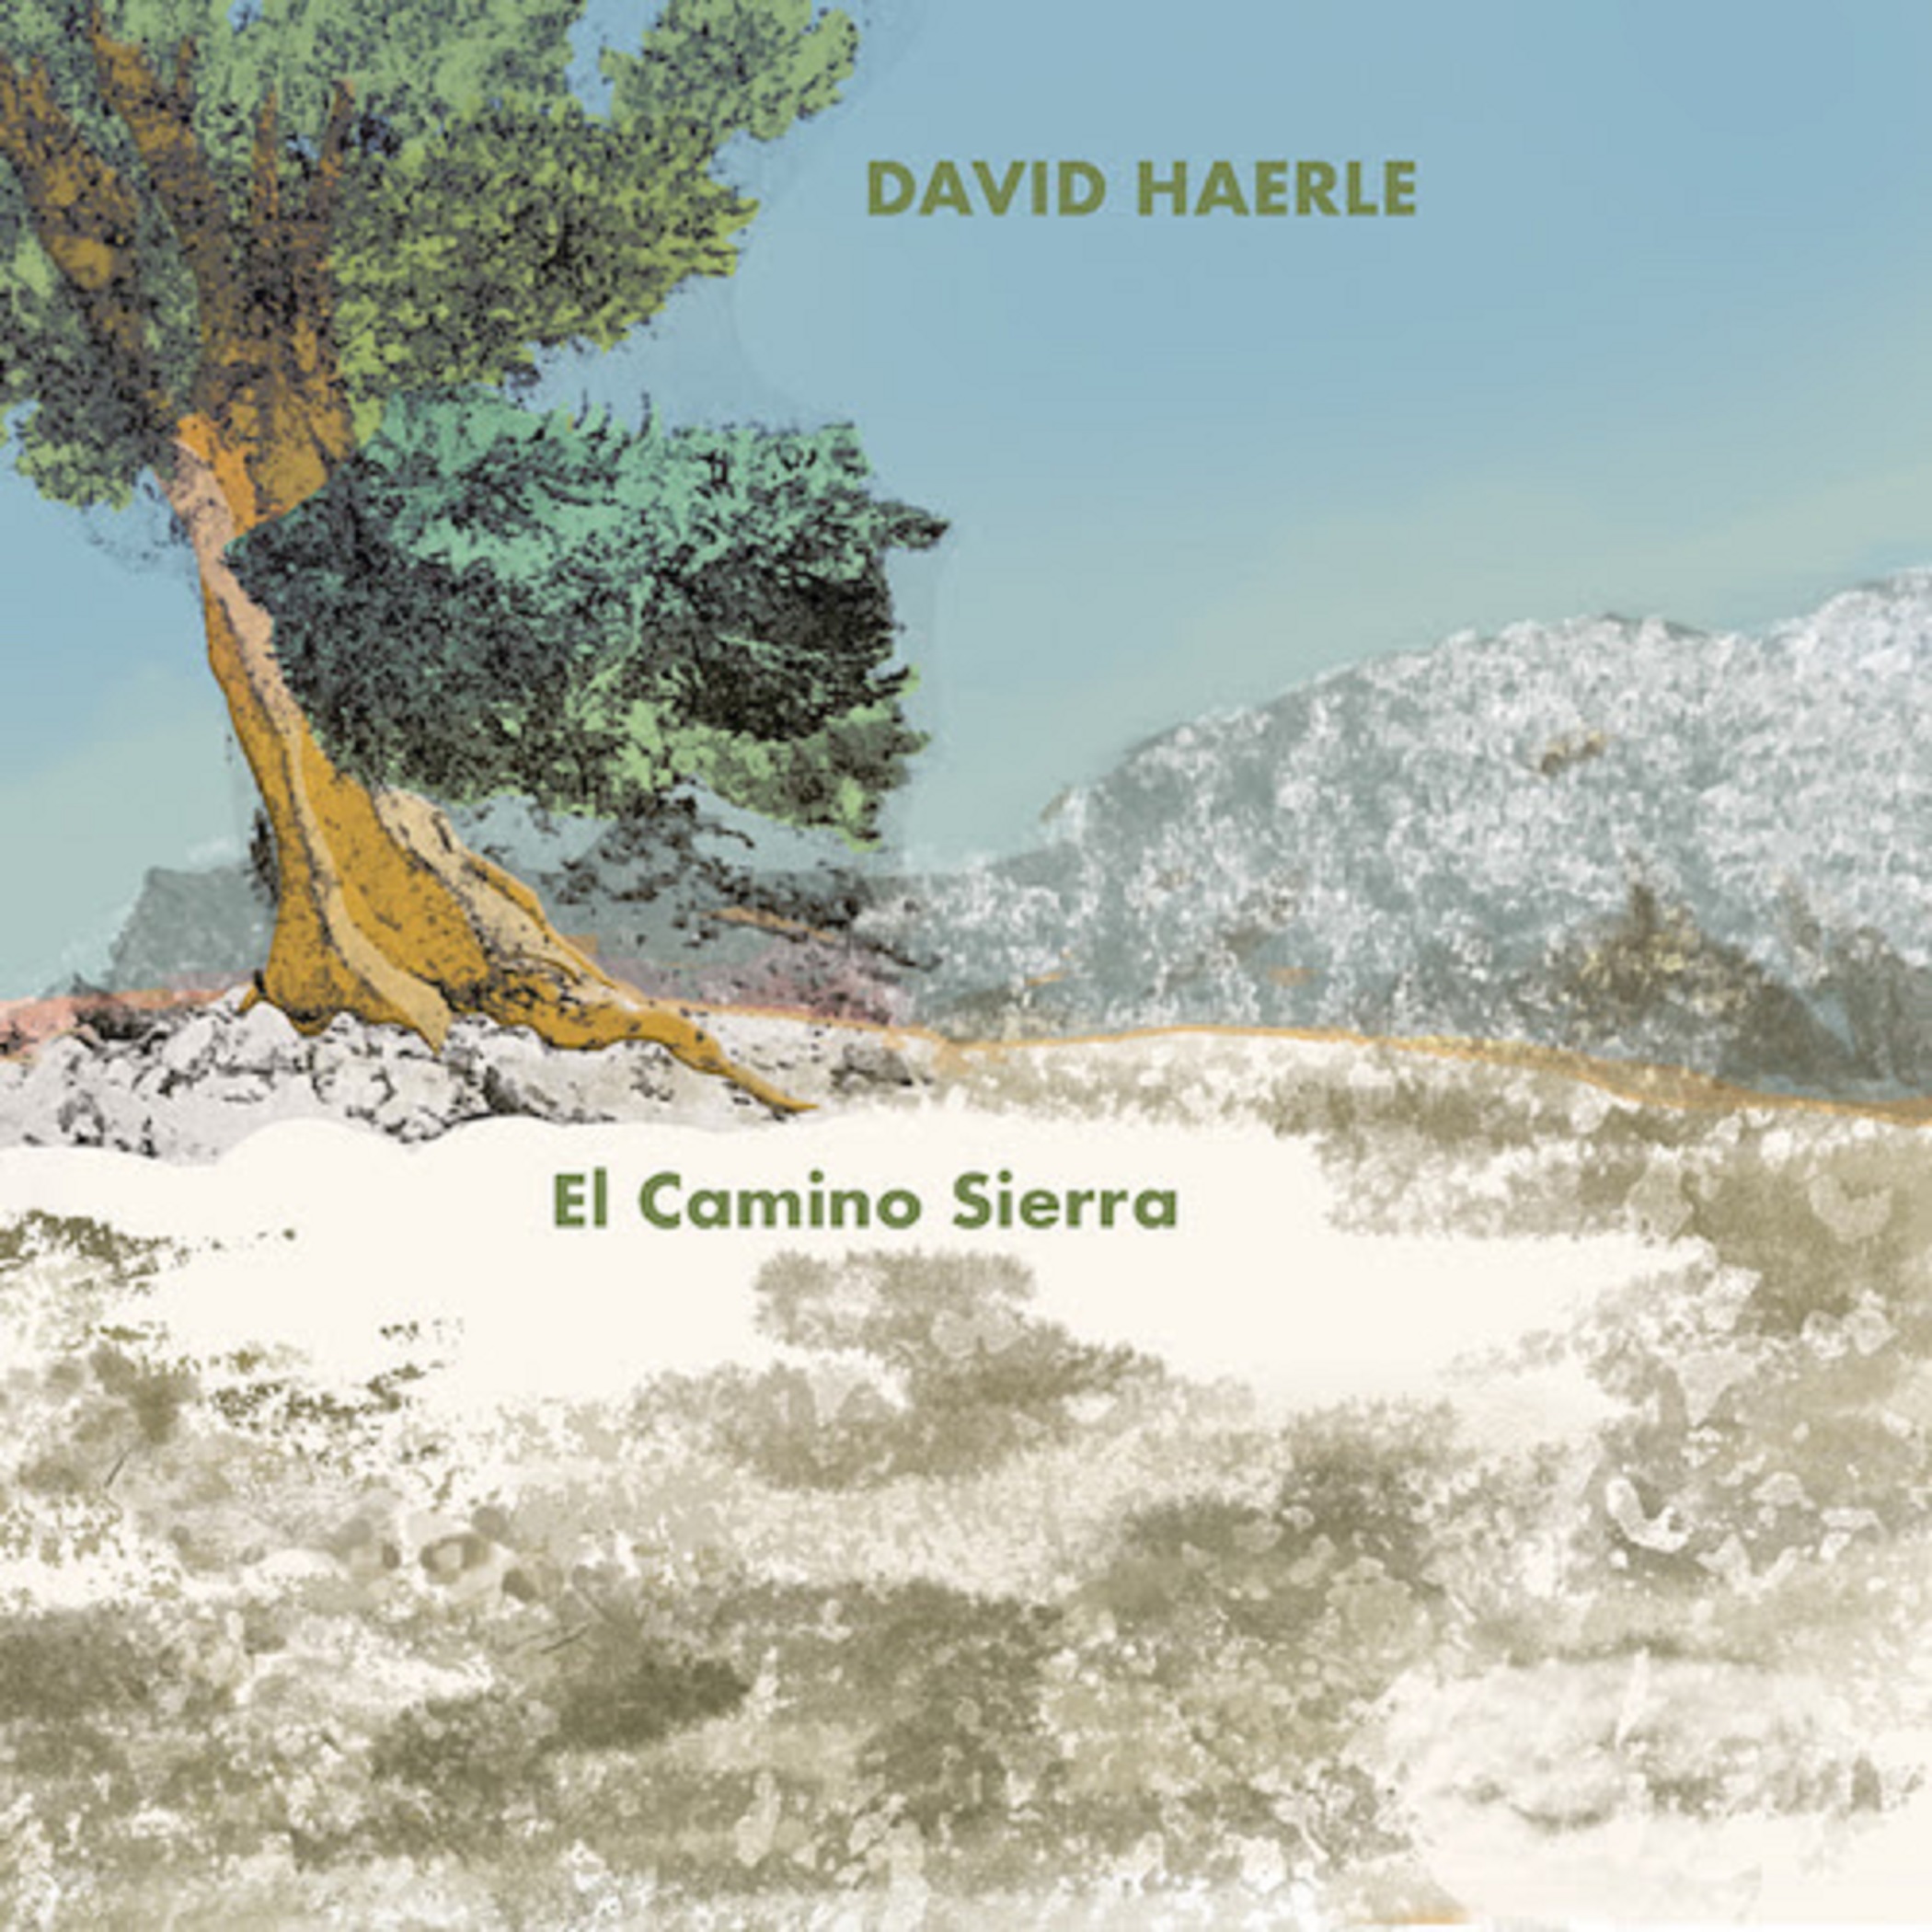 David Haerle Releases New Album 'El Camino Sierra'